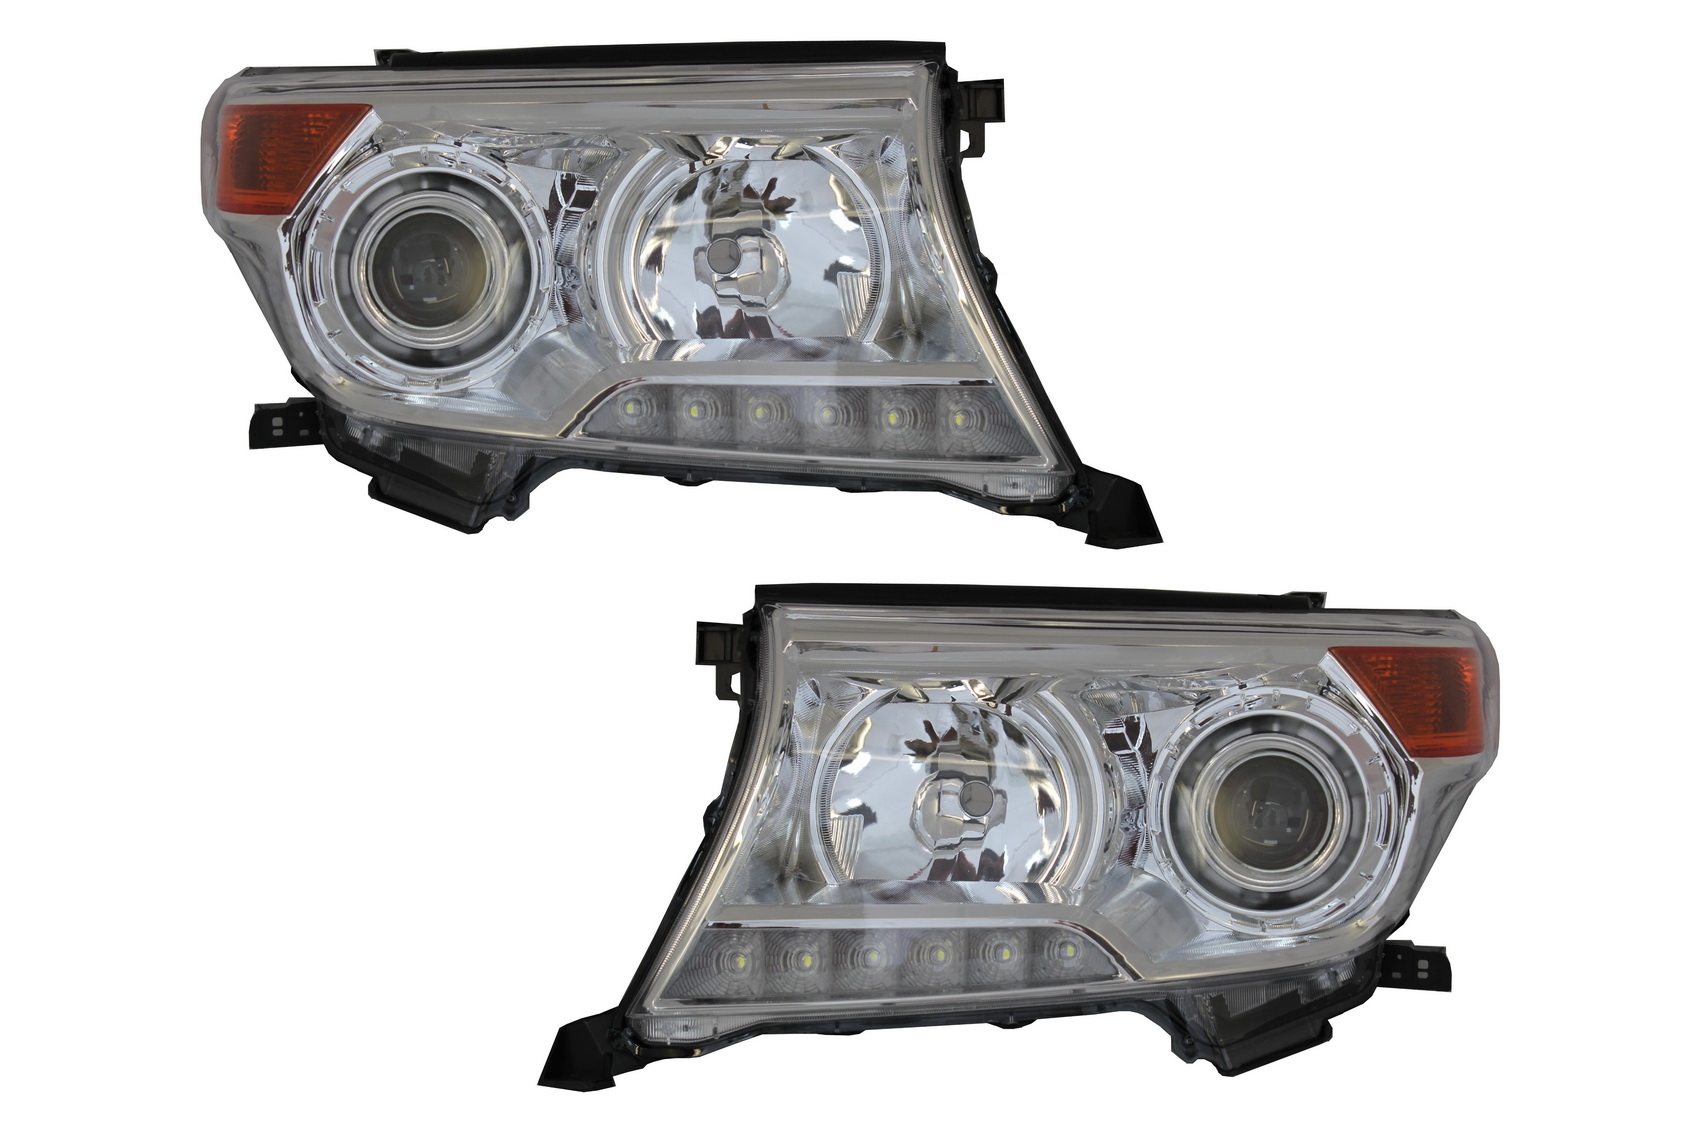 A Toyota Land Cruiser FJ200-hoz (2008-2012) használható LED DRL fényszórók Facelift 2012 modellre való frissítés